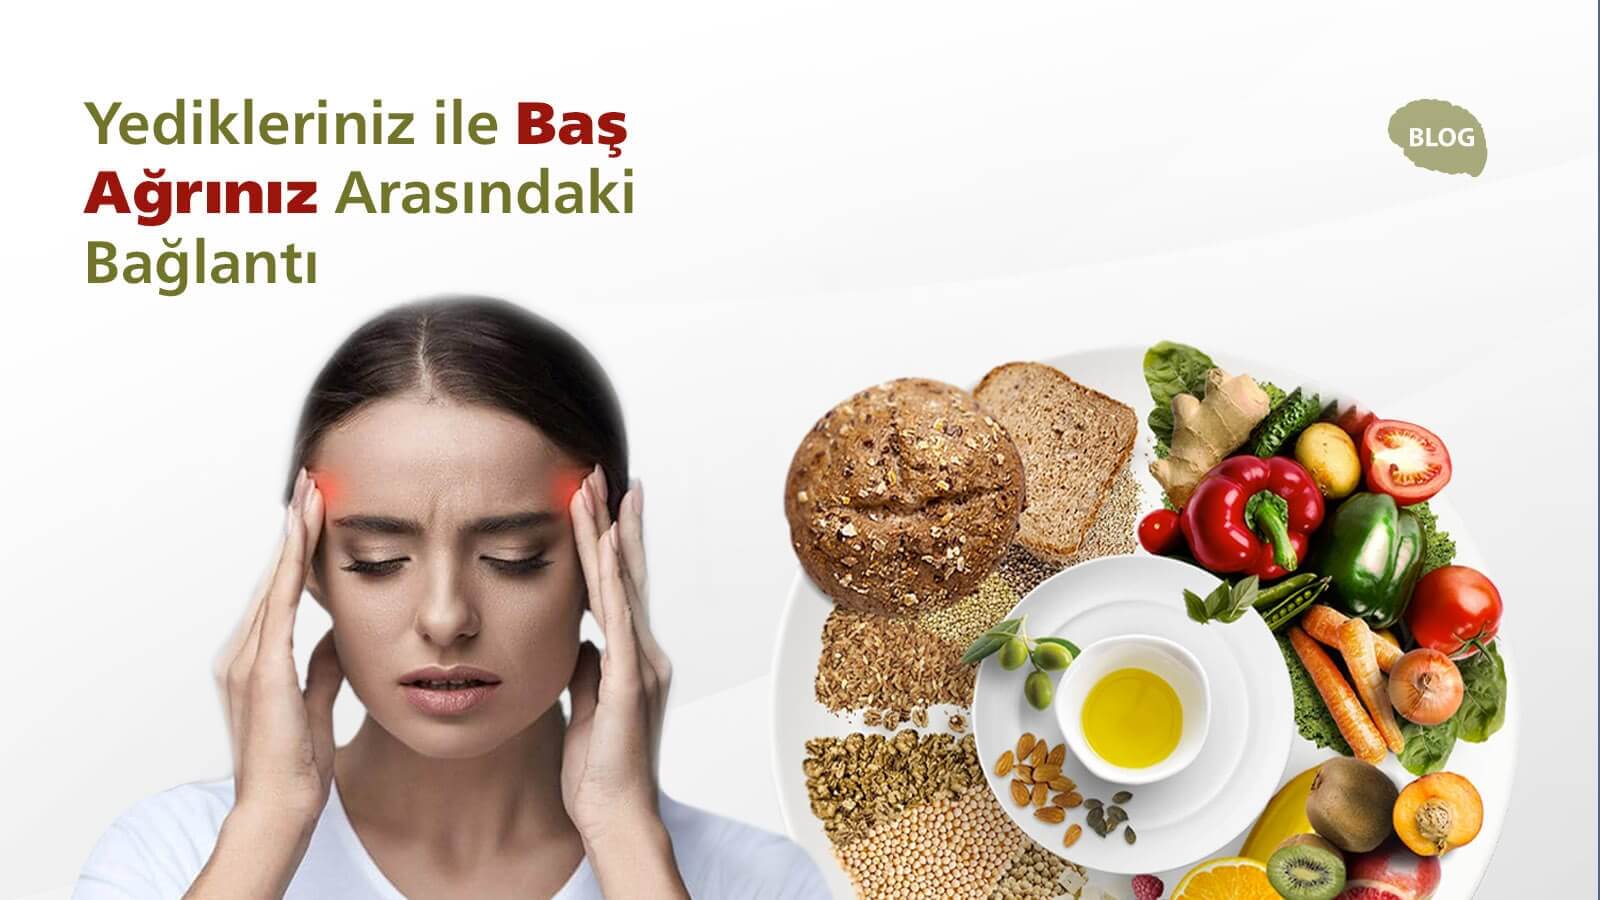 Yedikleriniz ile baş ağrınız arasındaki bağlantı